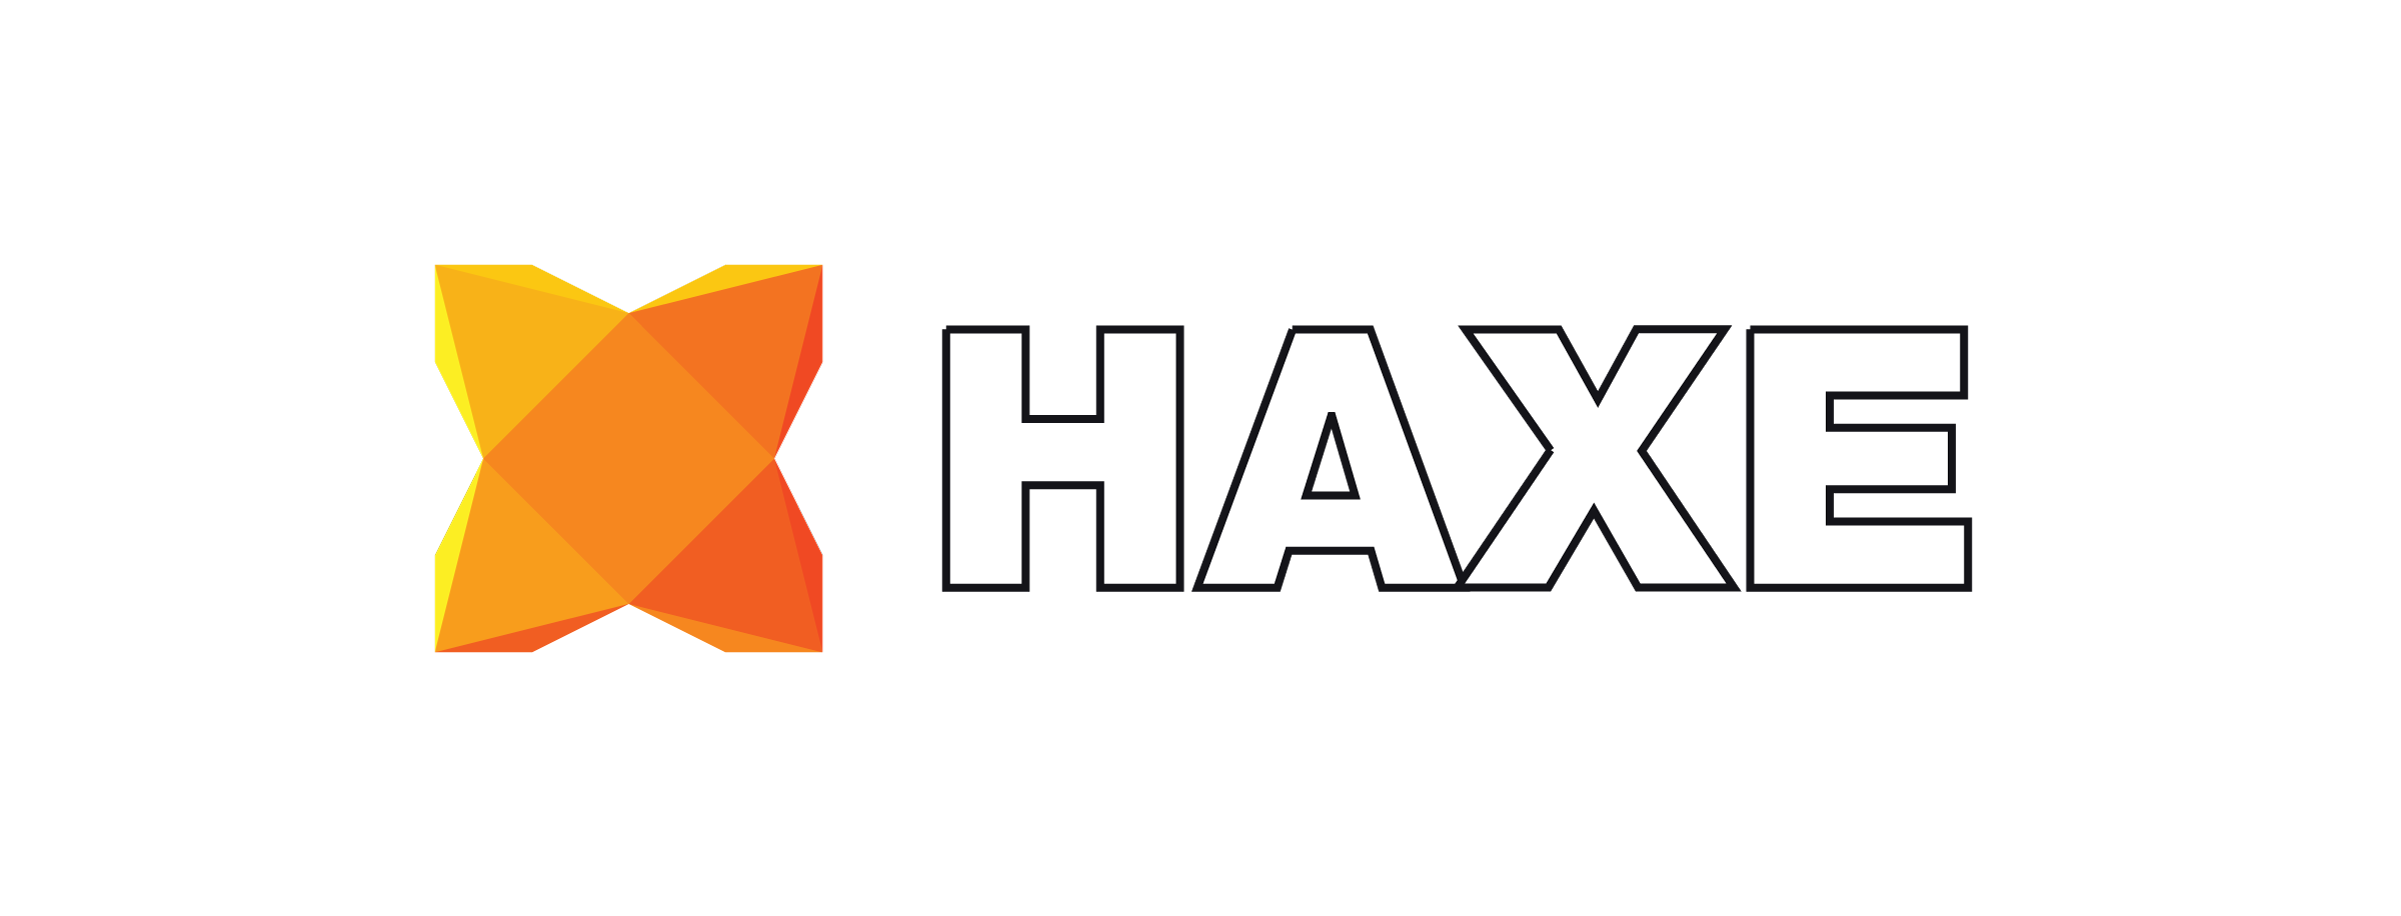 Haxe PNG - 50149